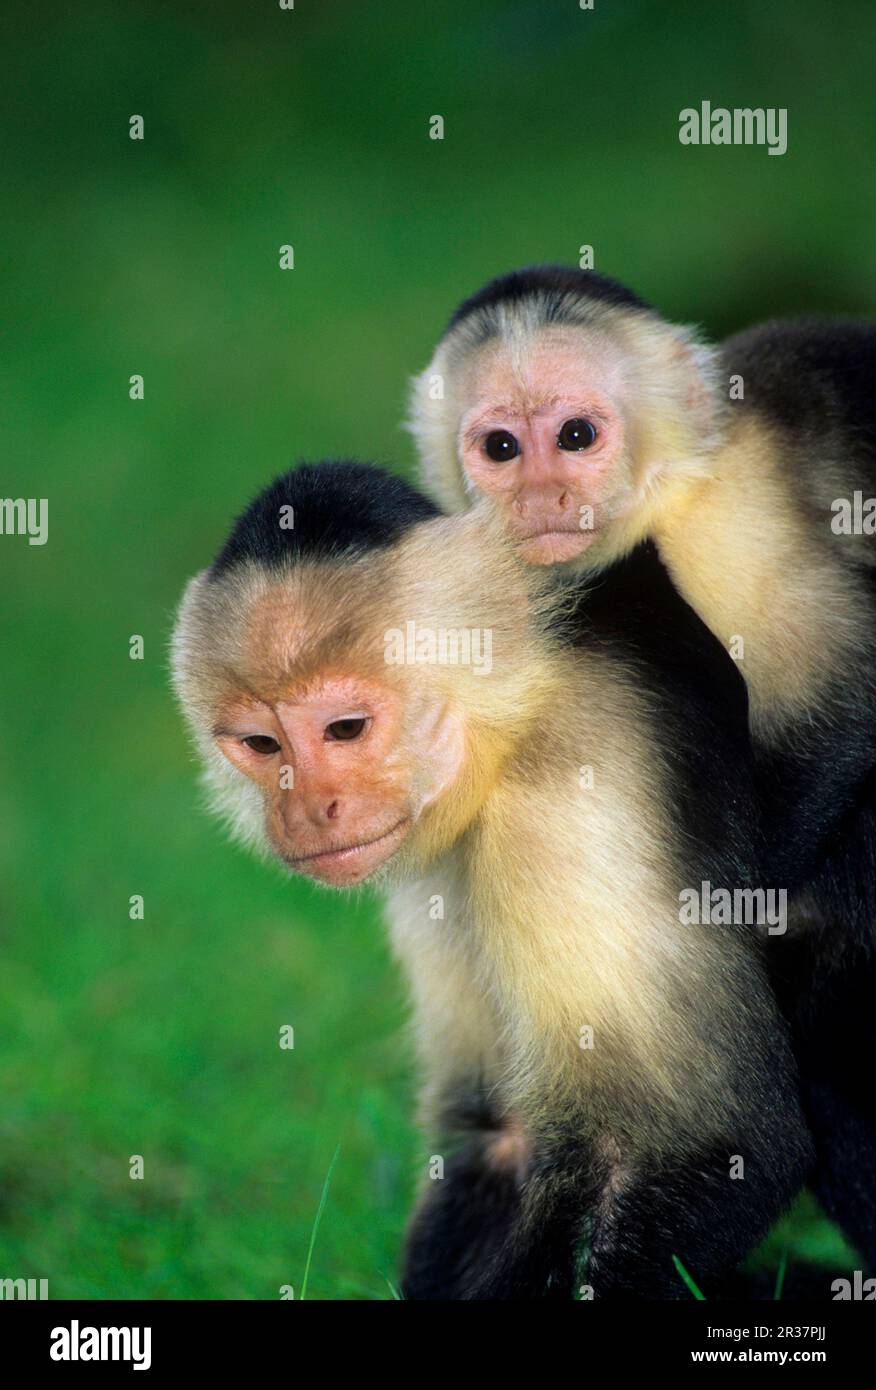 White-shouldered Capuchin, White-shouldered Capuchin Monkey, Monkeys, Capuchins, Primates, Mammals, Animals, White-faced Capuchin (Cebus capuchinus) Stock Photo